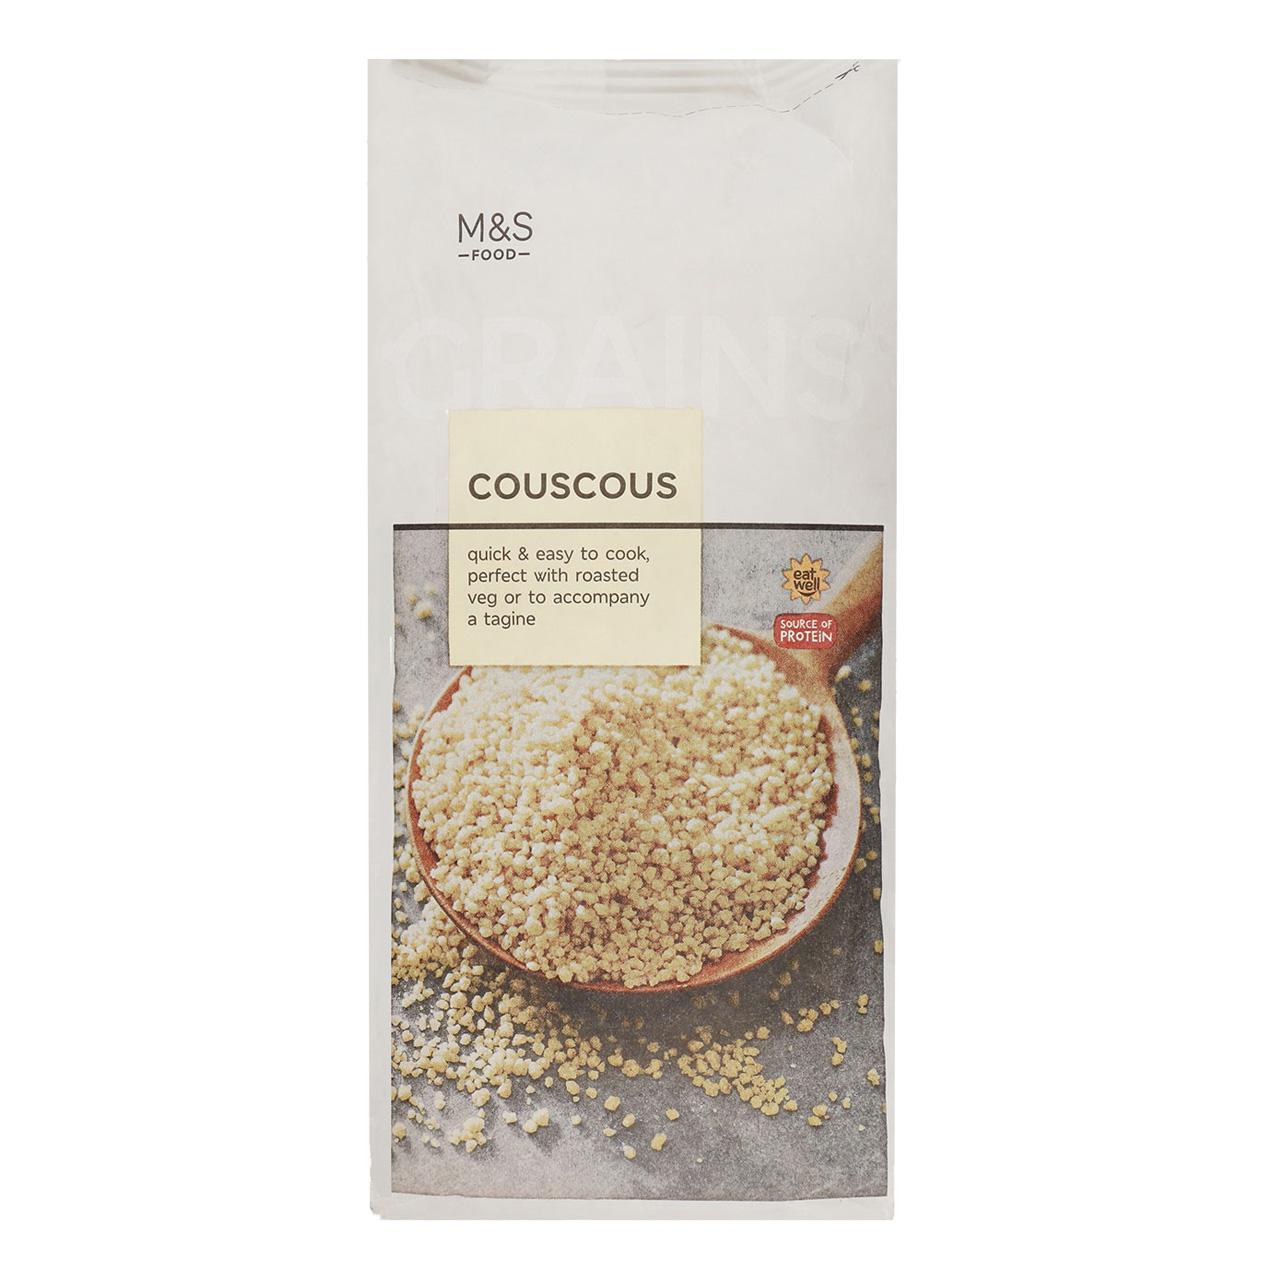 M&S Couscous